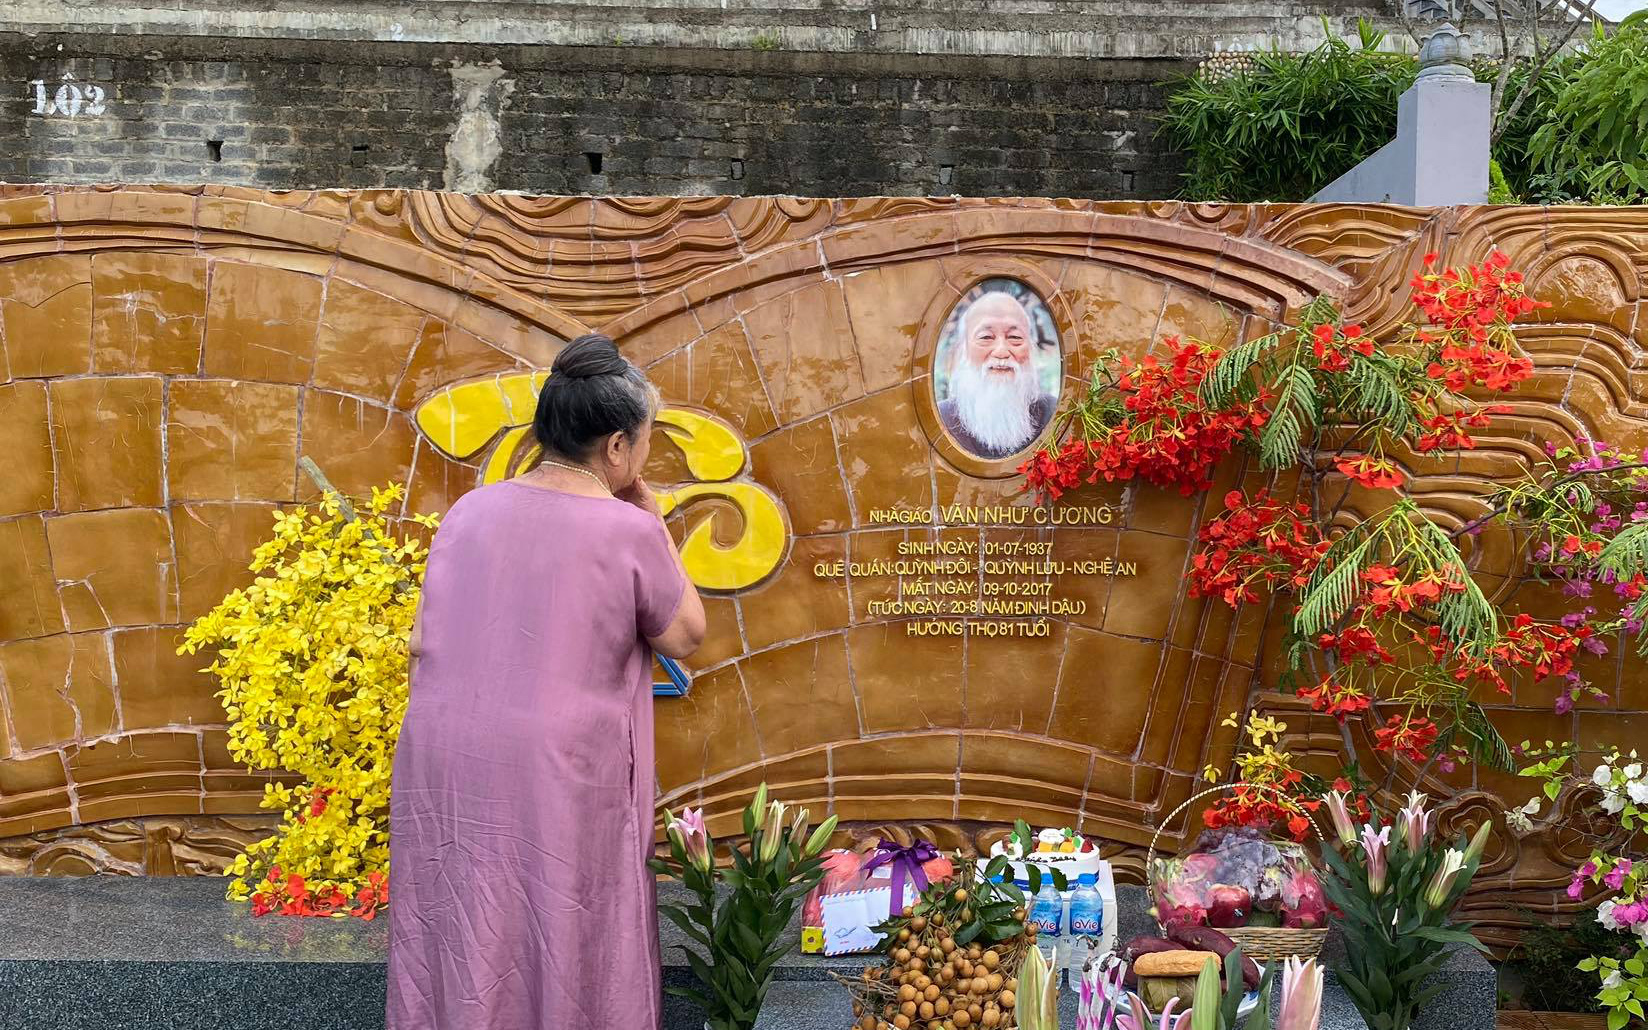 Đặng Tiểu Tô Sa - cháu ngoại thầy Văn Như Cương chia sẻ khoảnh khắc xúc động của bà bên cạnh mộ ông nhân 83 năm ngày sinh cố PGS